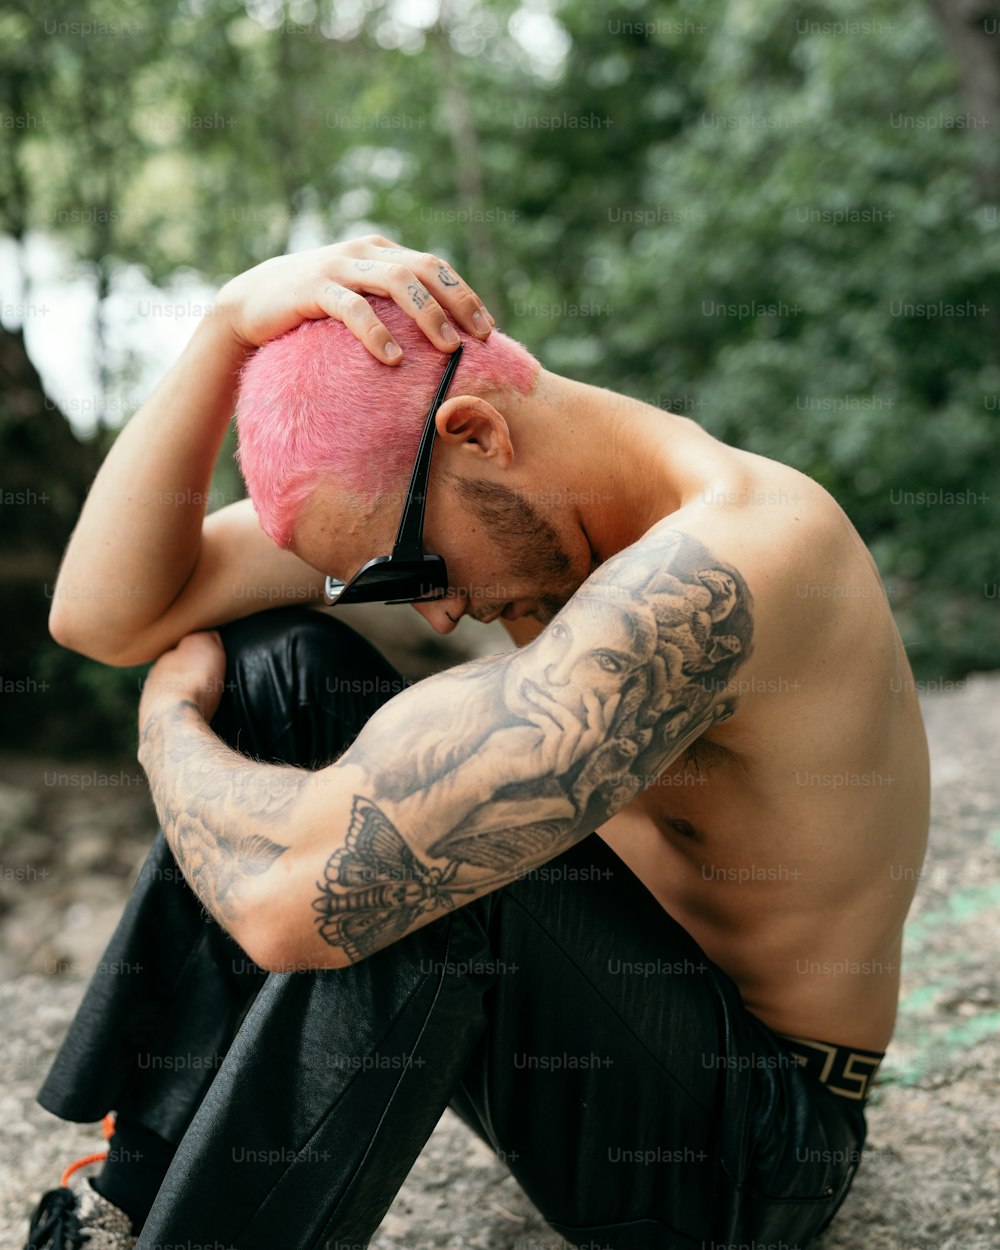 Un homme avec un mohawk rose assis sur un rocher